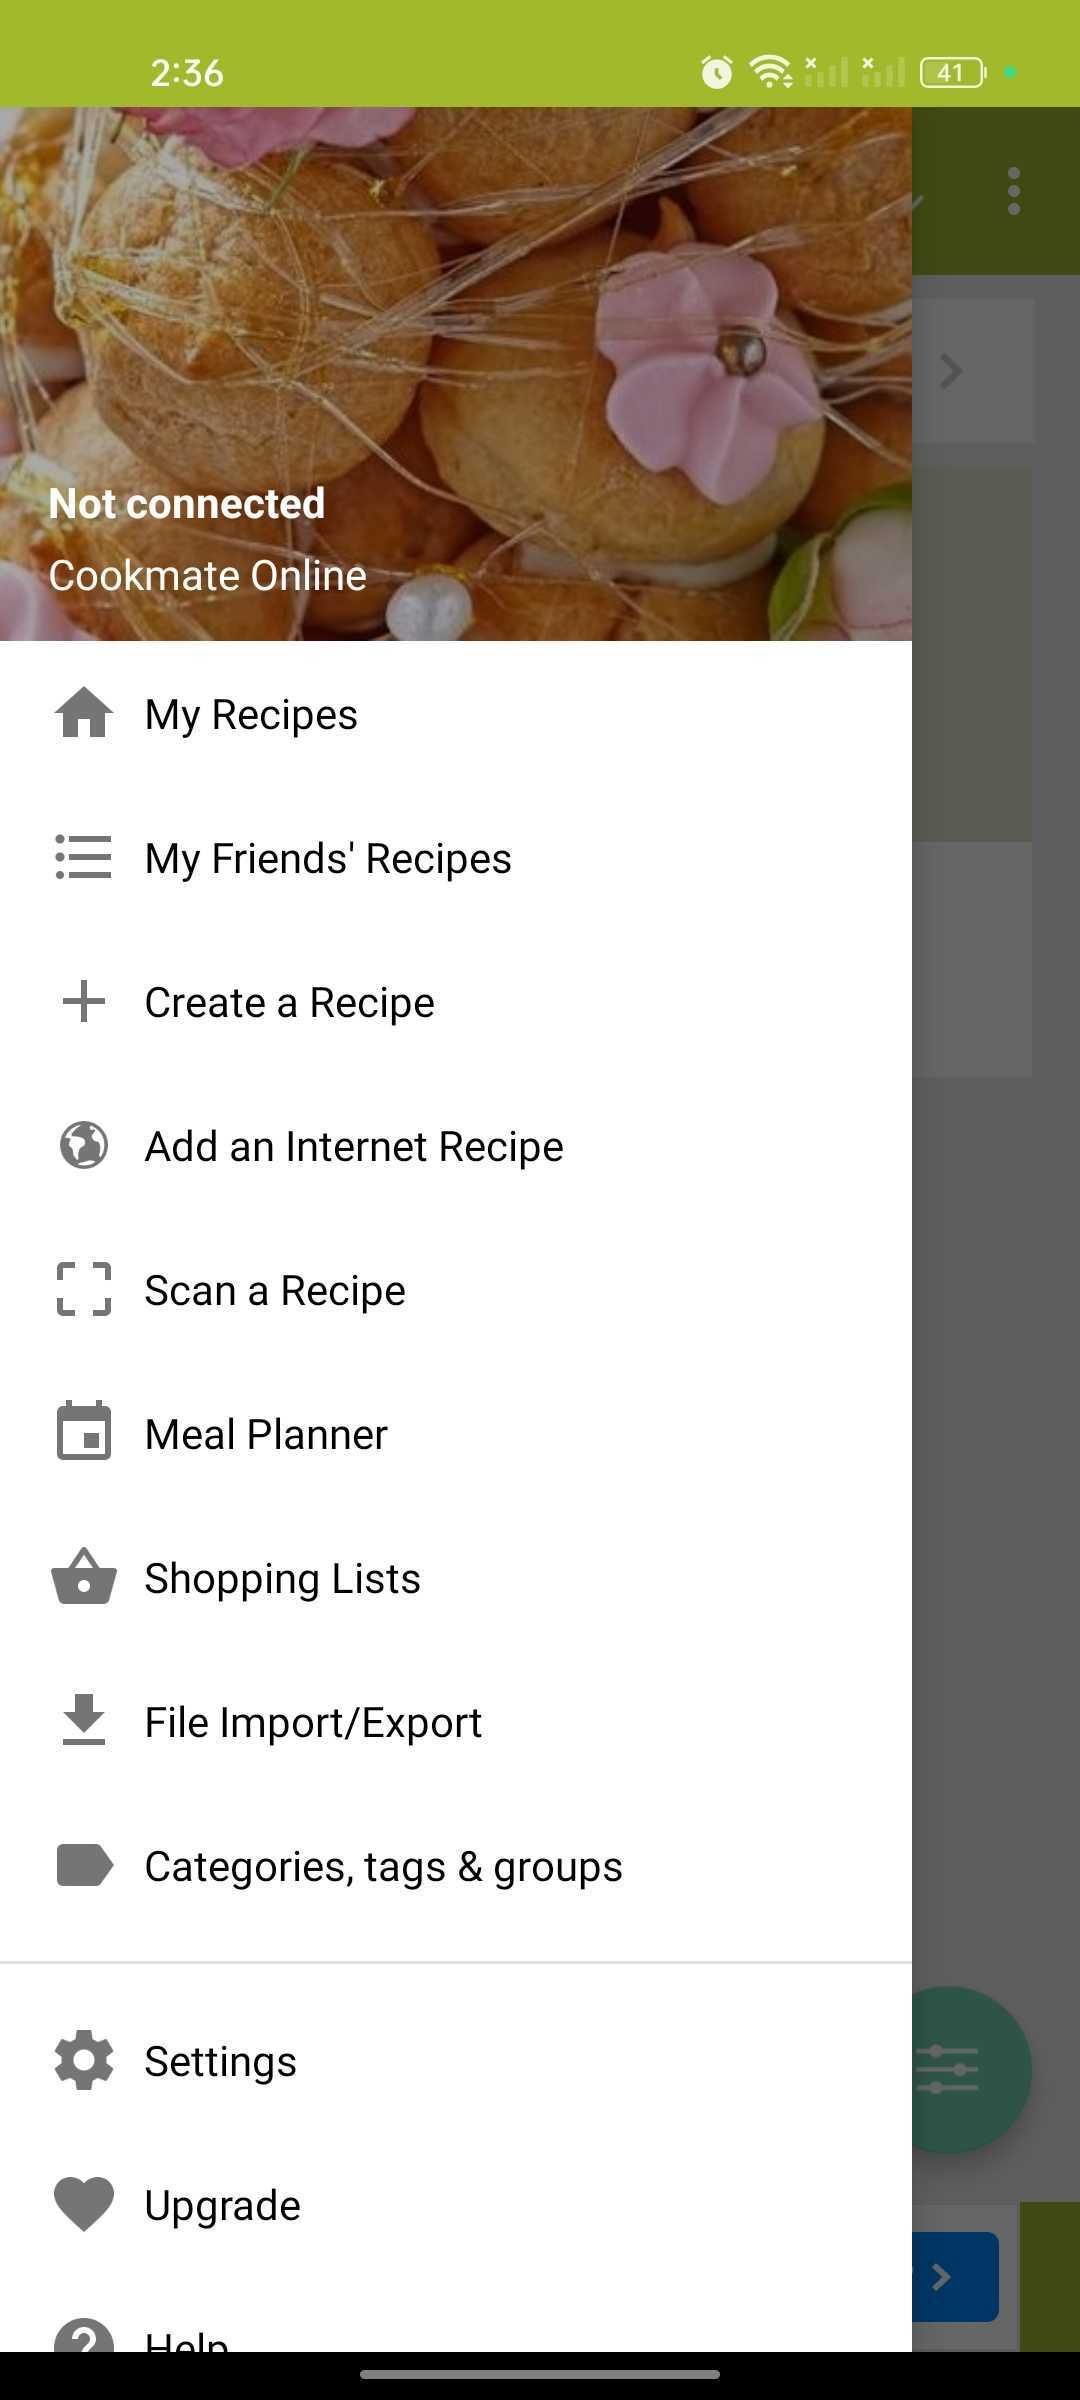 Cookmate menu bar in Android